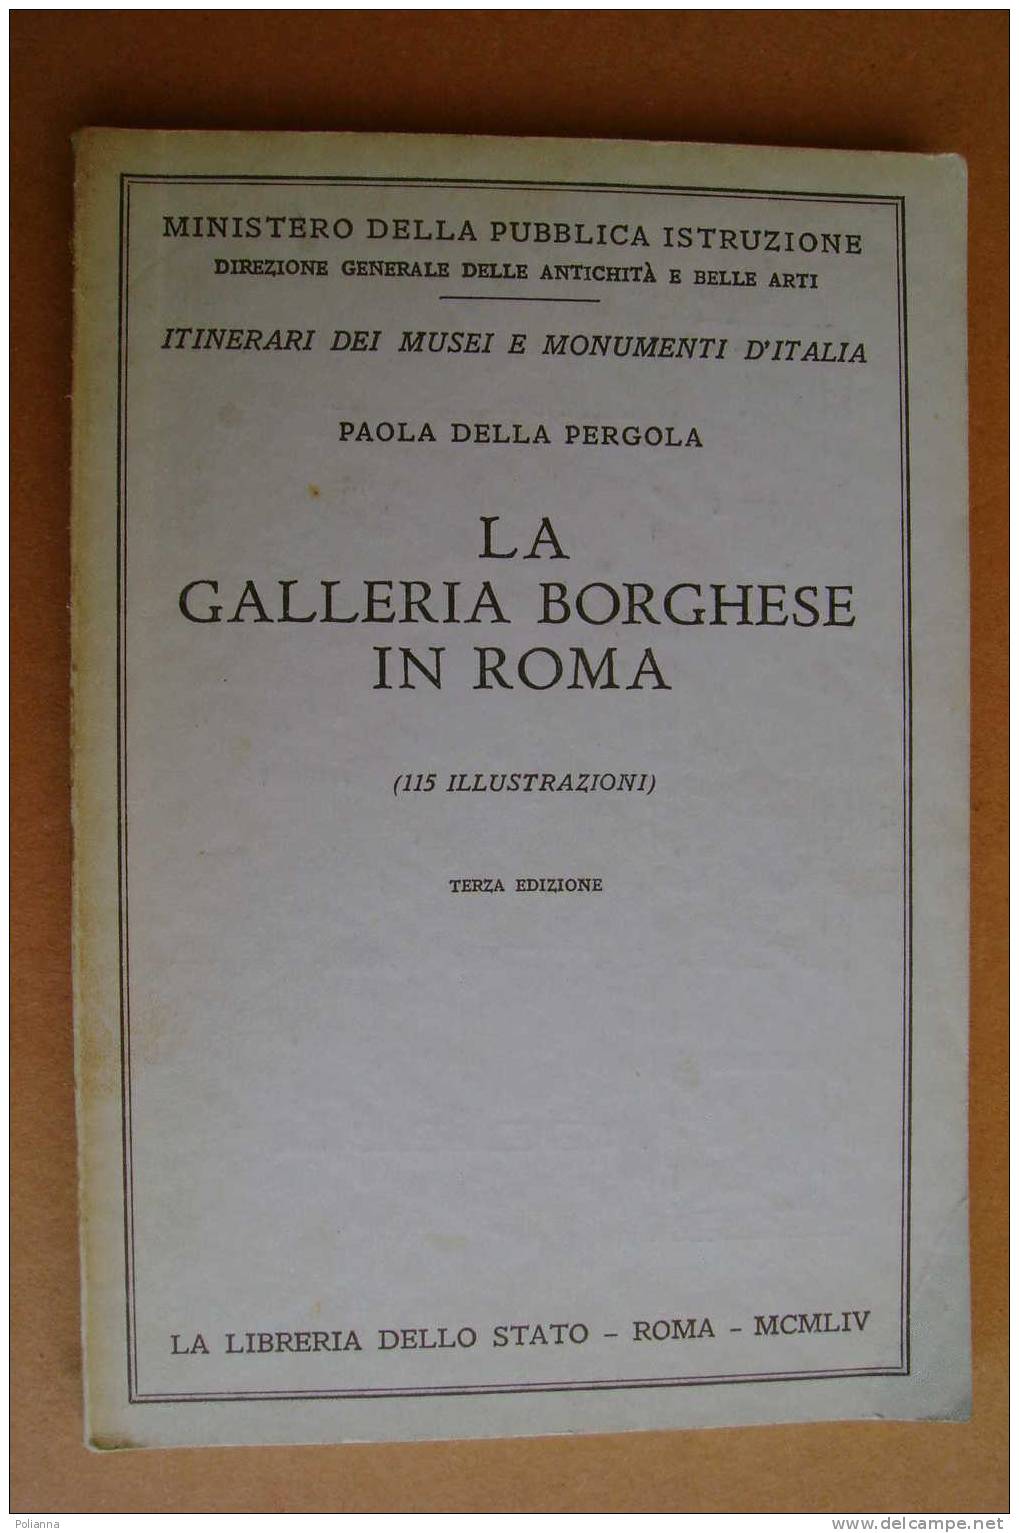 PAO/38 Della Pergola LA GALLERIA BORGHESE IN ROMA Ist.Poligrafico 1954 - Arts, Antiquity